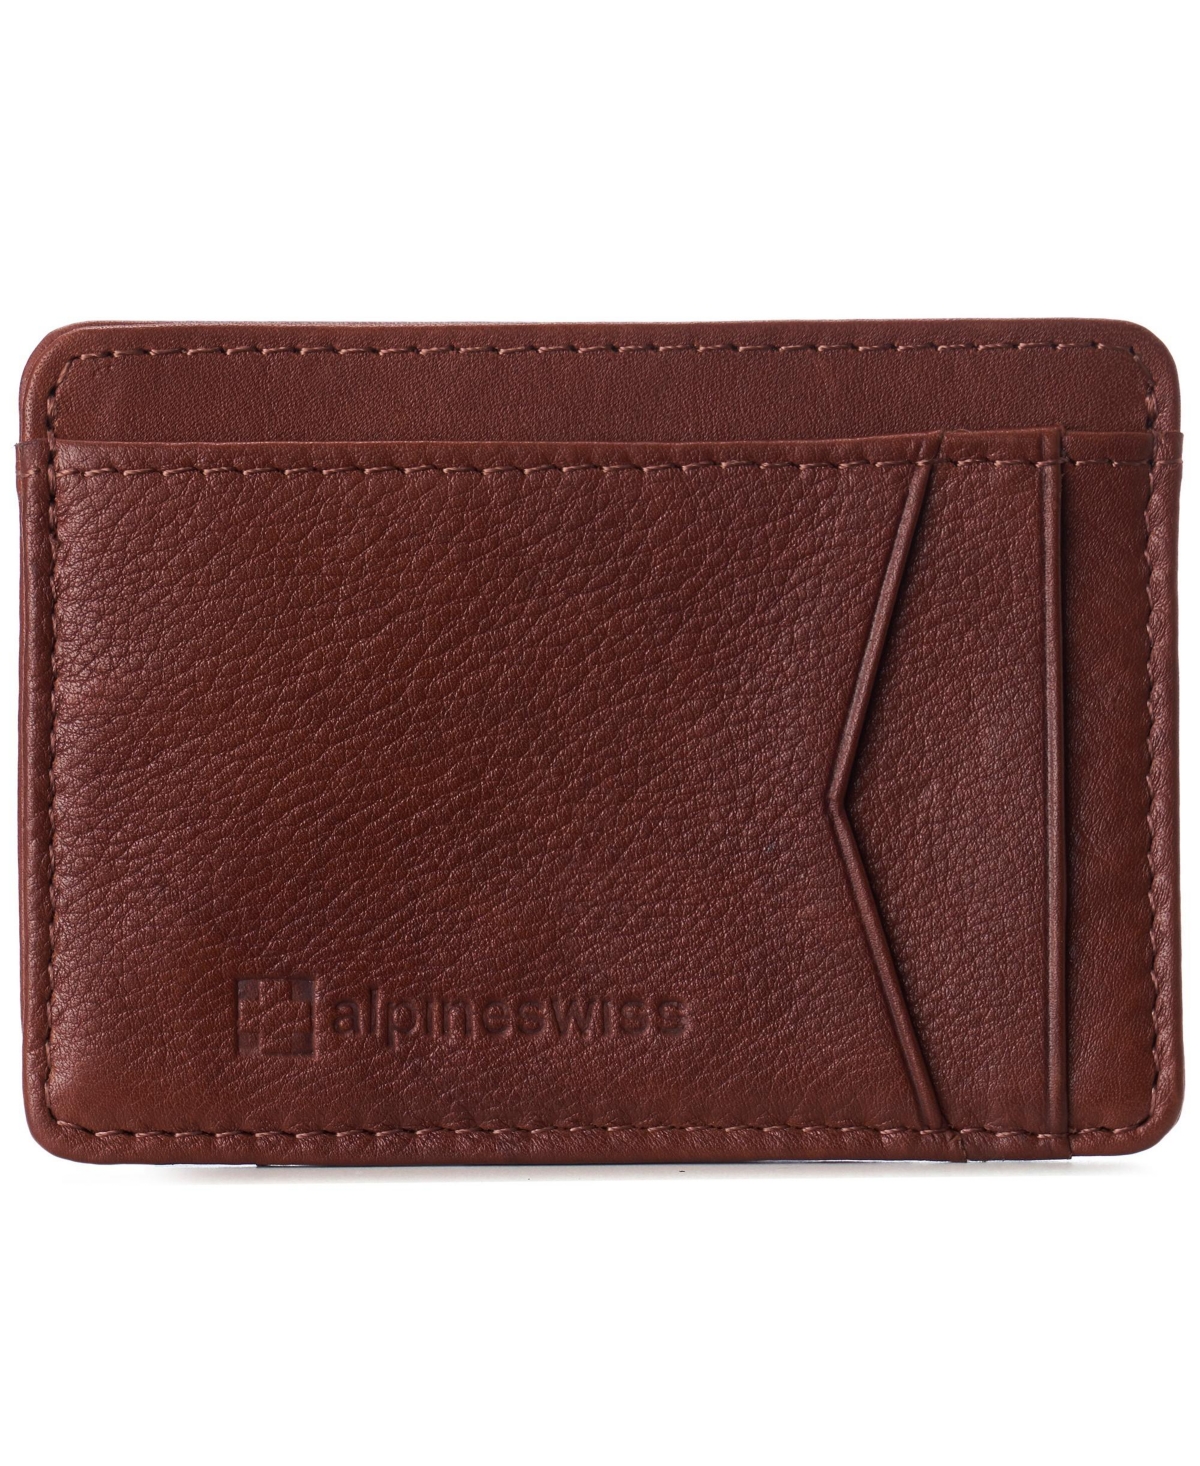 Men Rfid Safe Minimalist Front Pocket Wallet Leather Thin Card Case - Black